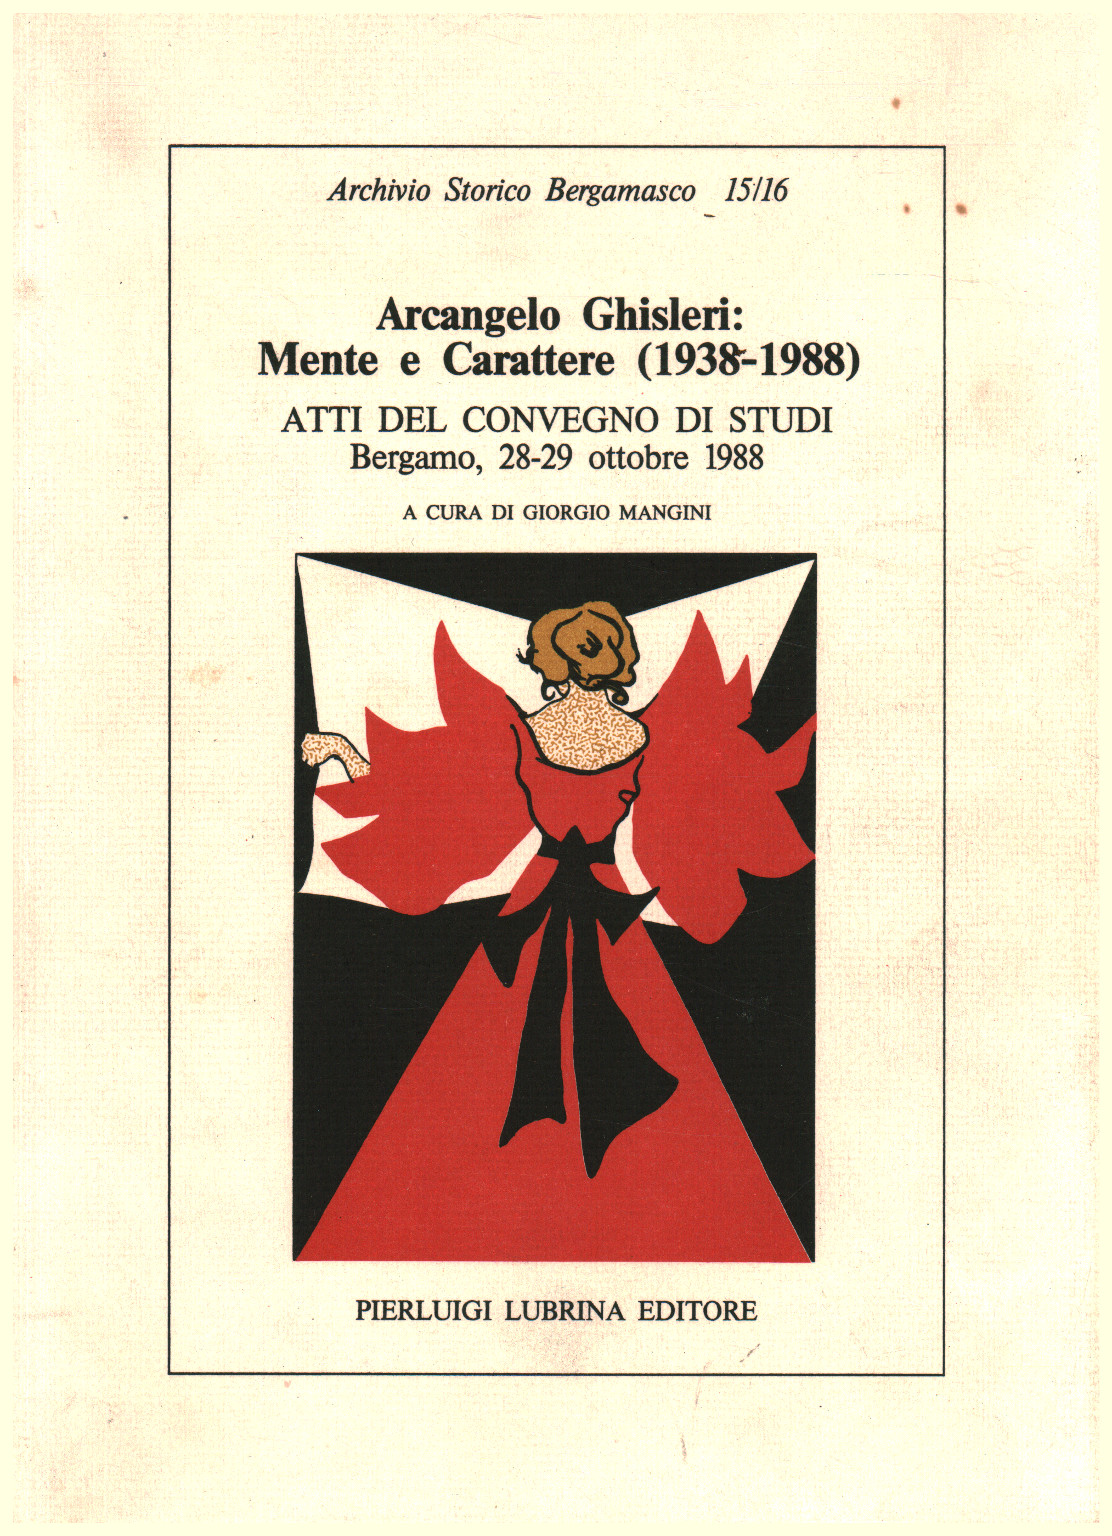 Arcangelo Ghisleri: Geist und Charakter (1938-1988), s.a.